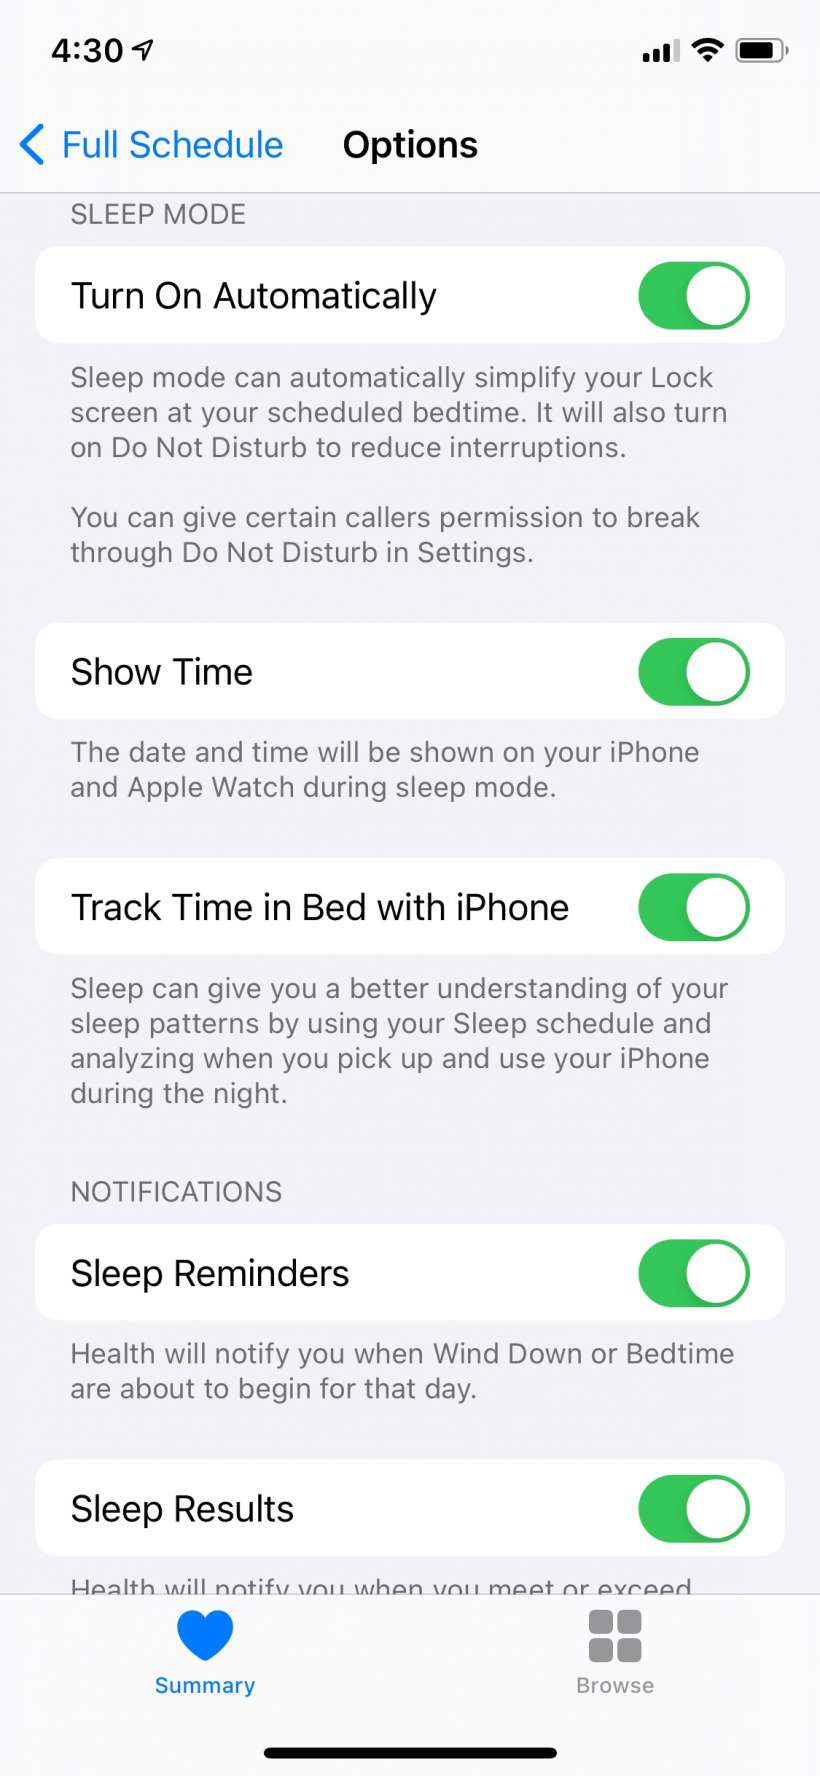 How to schedule Bedtime sleep schedule alarms on iPhone.